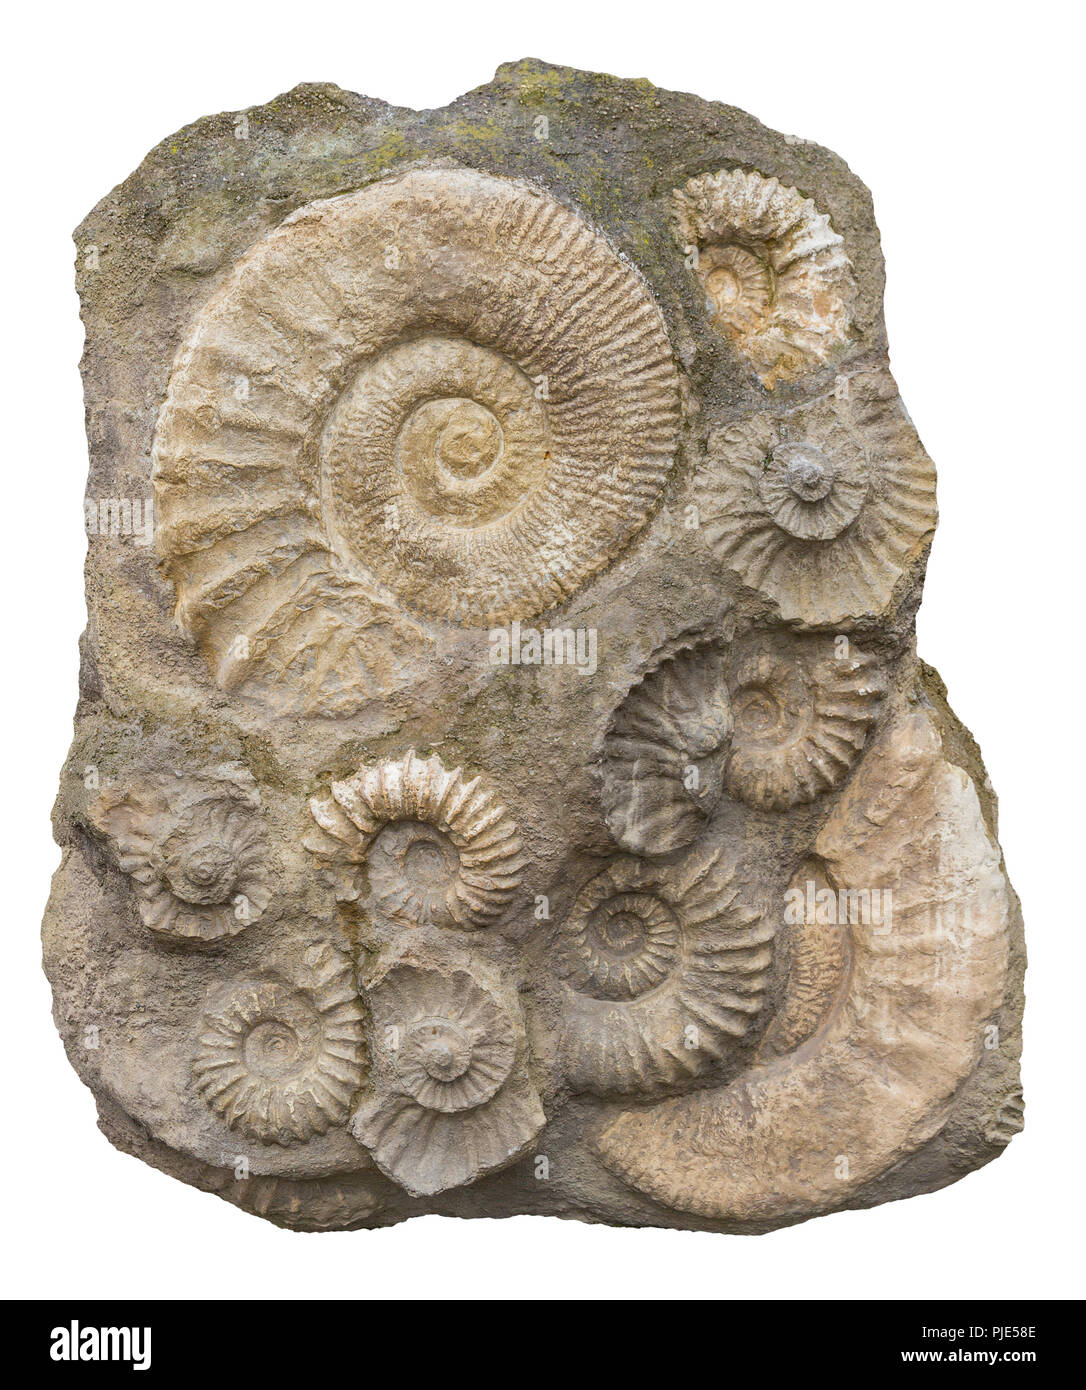 Formation rocheuse isolée comprenant de nombreux fossiles d'ammonites Banque D'Images